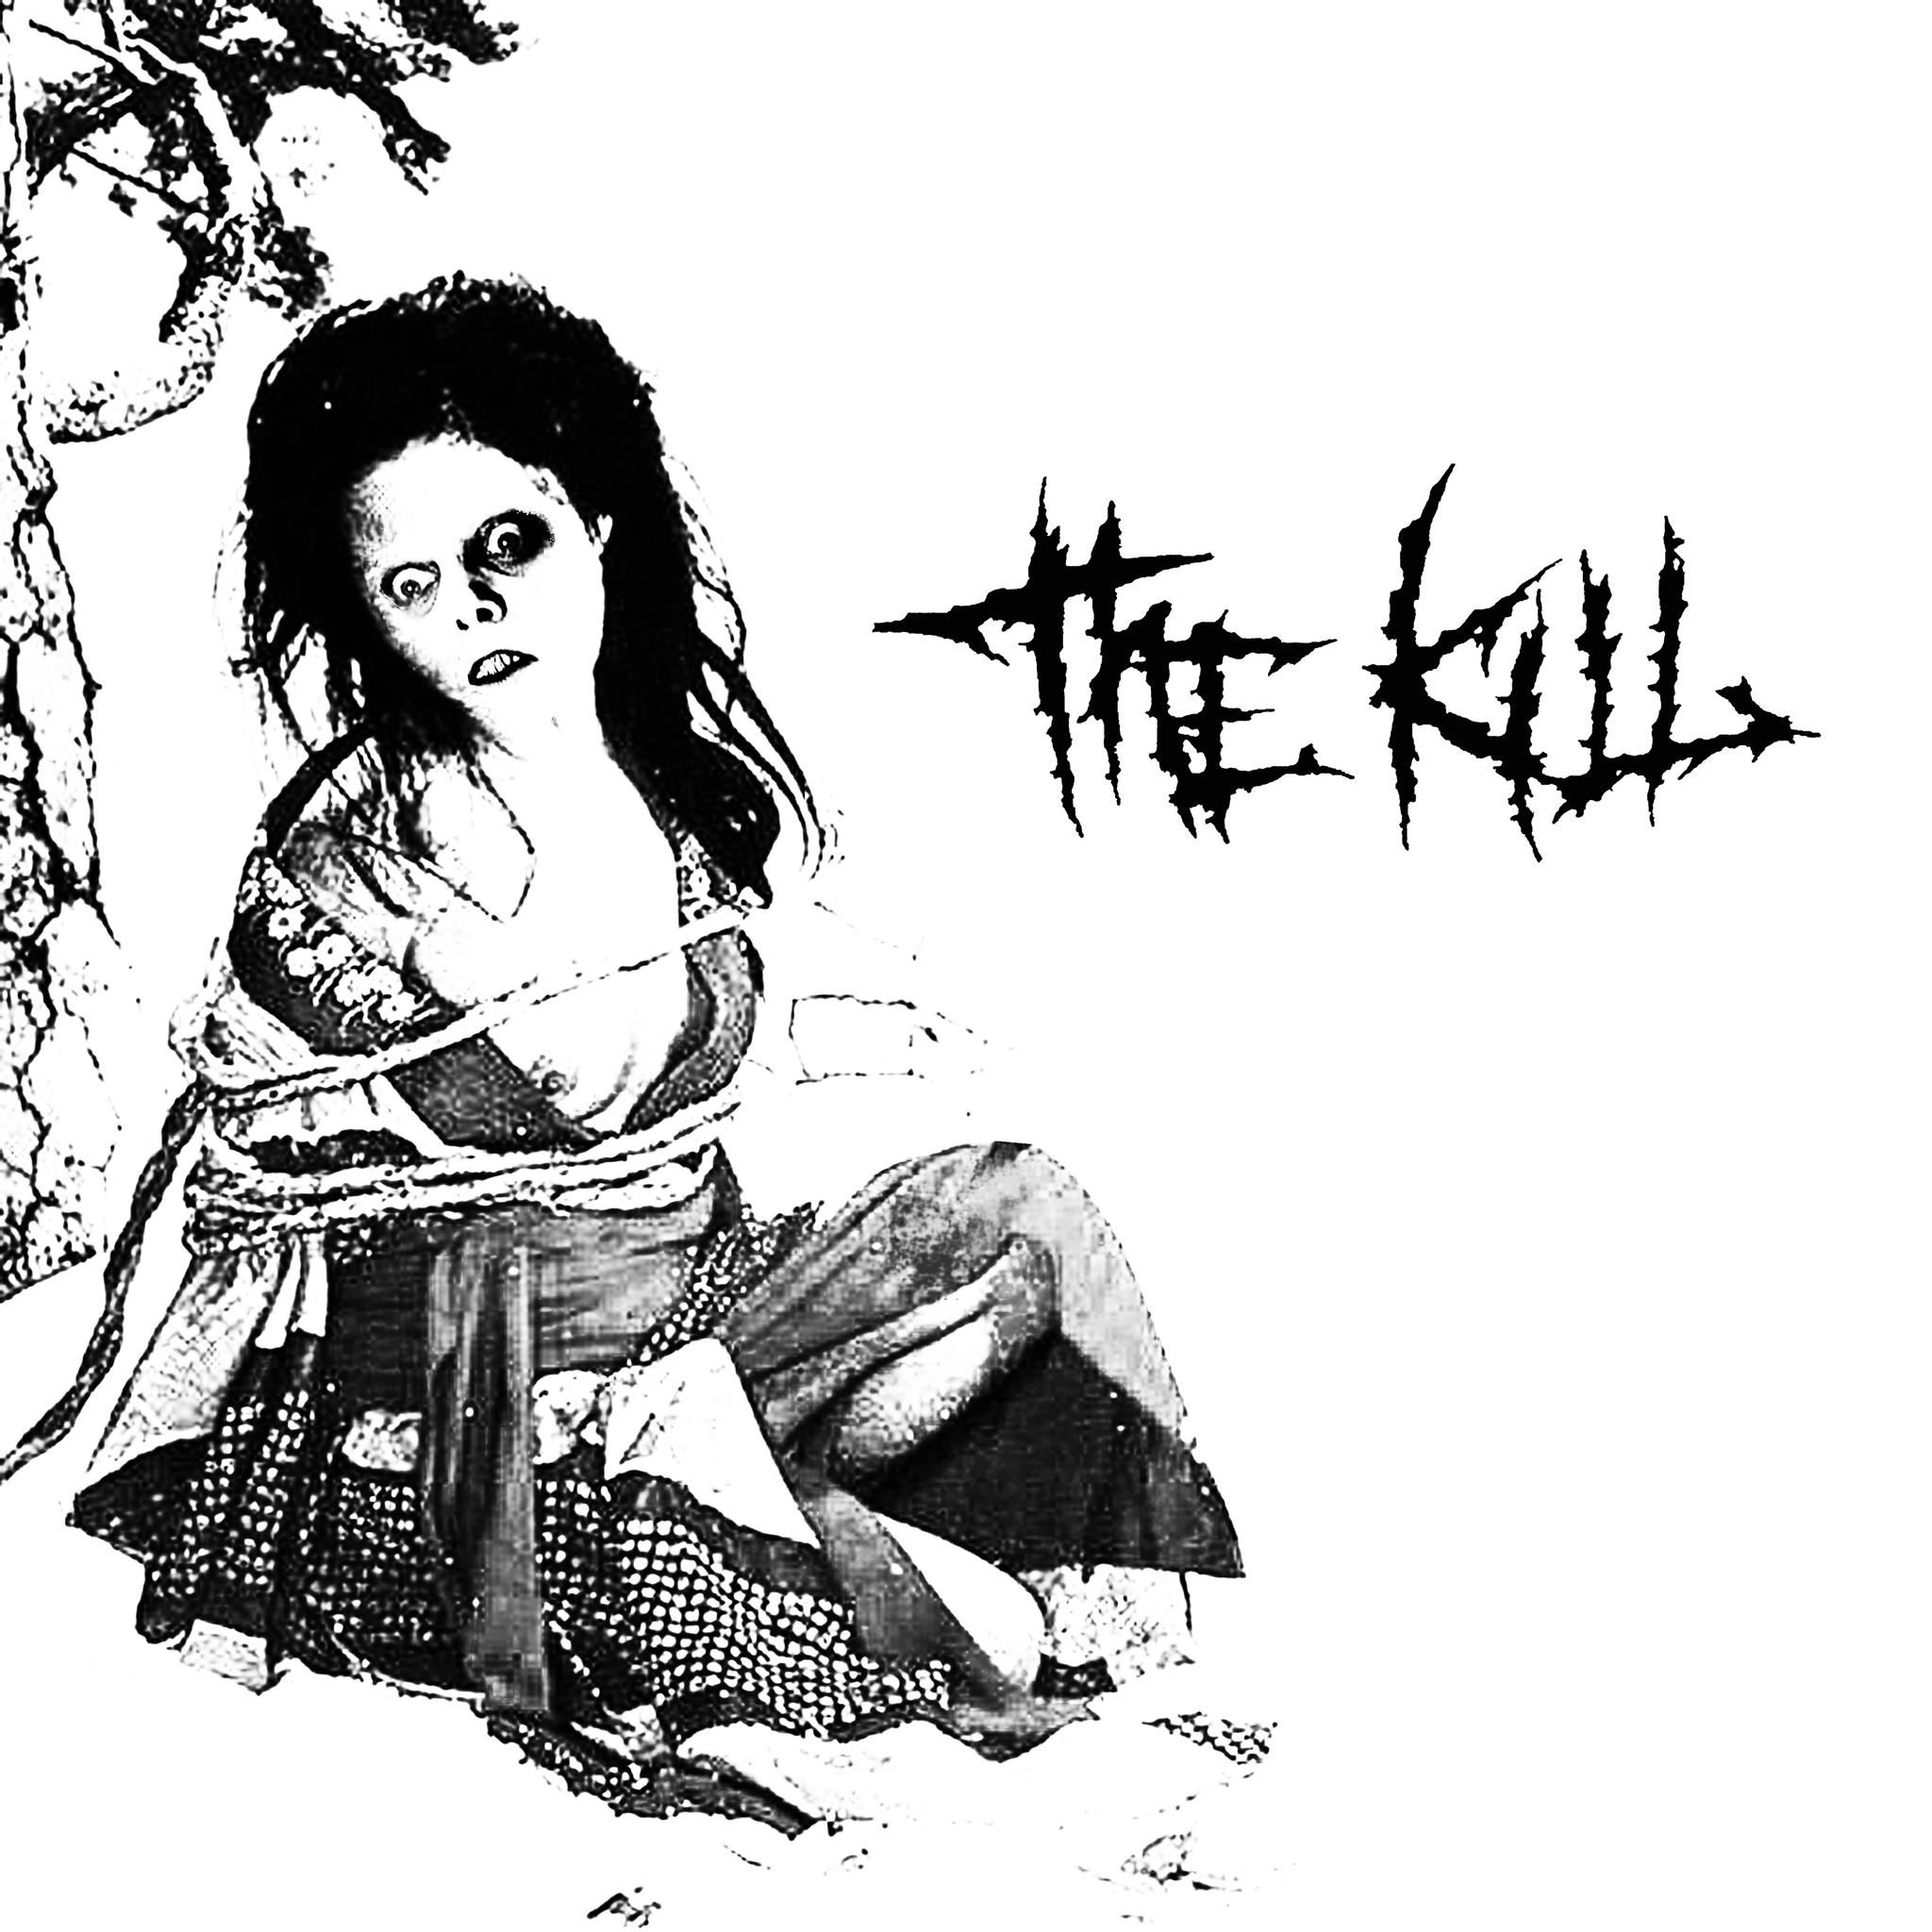 THE KILL / MORTALIZED - SPLIT 7"